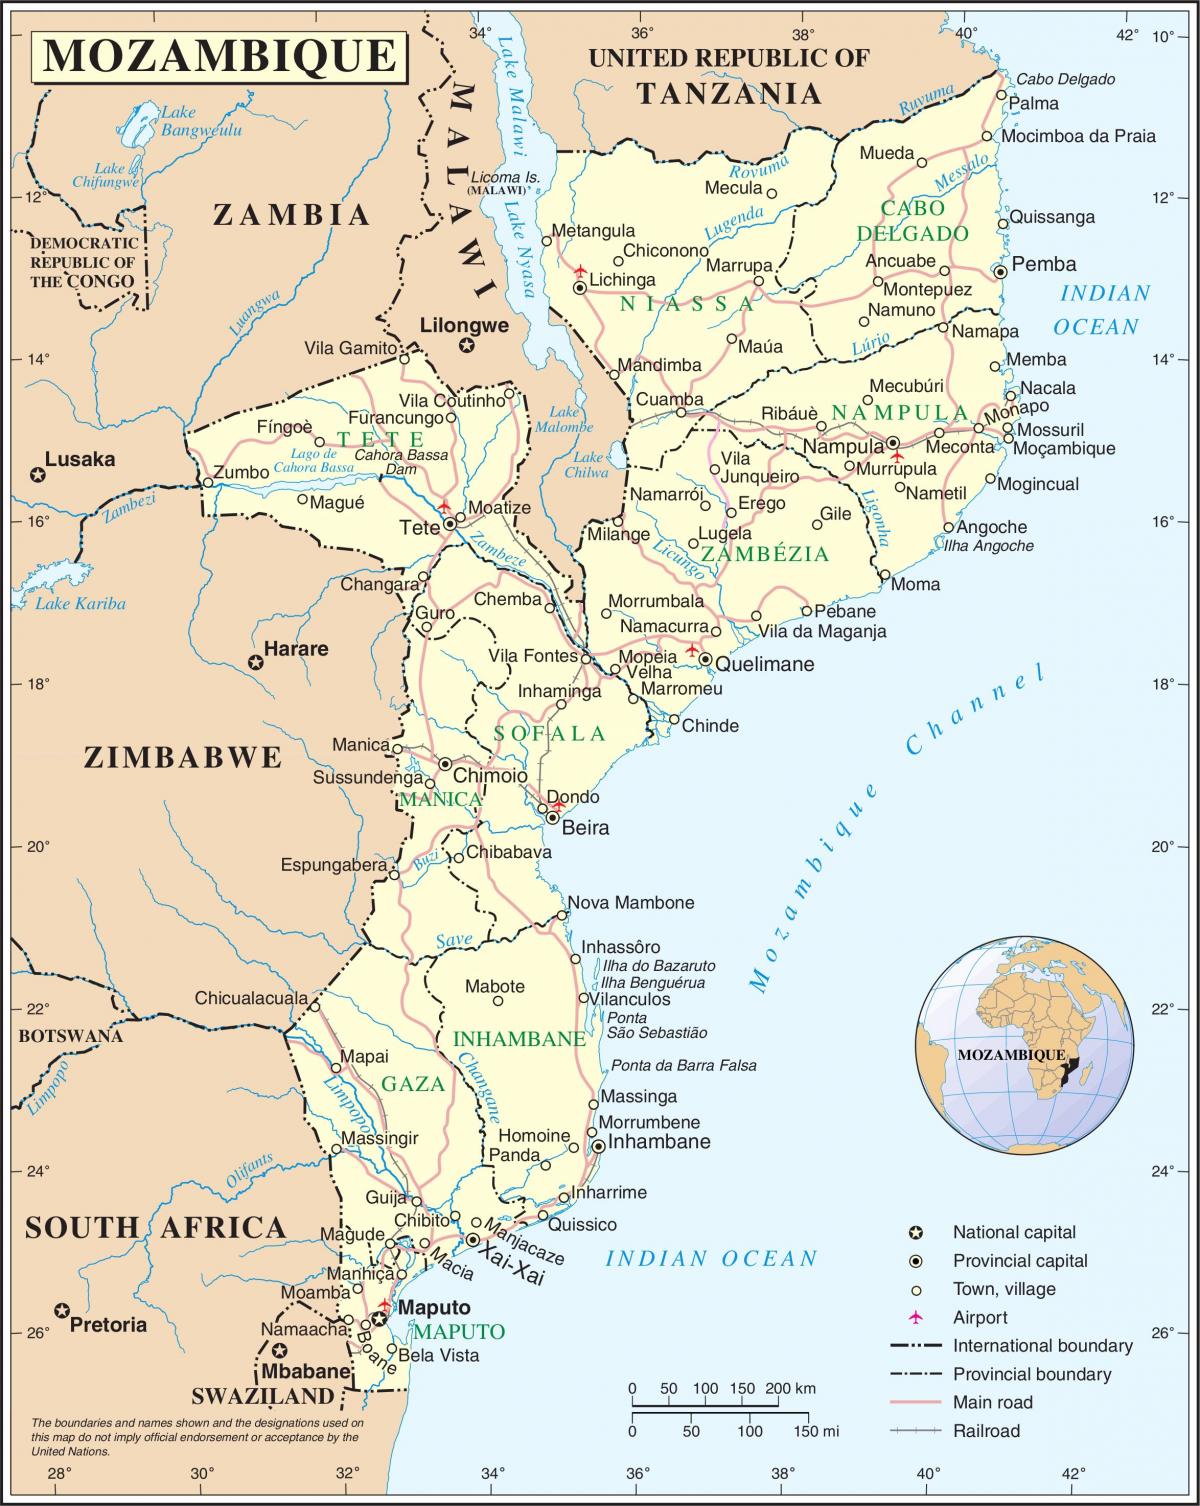 нисэх онгоцны буудал Мозамбик дахь газрын зураг дээр